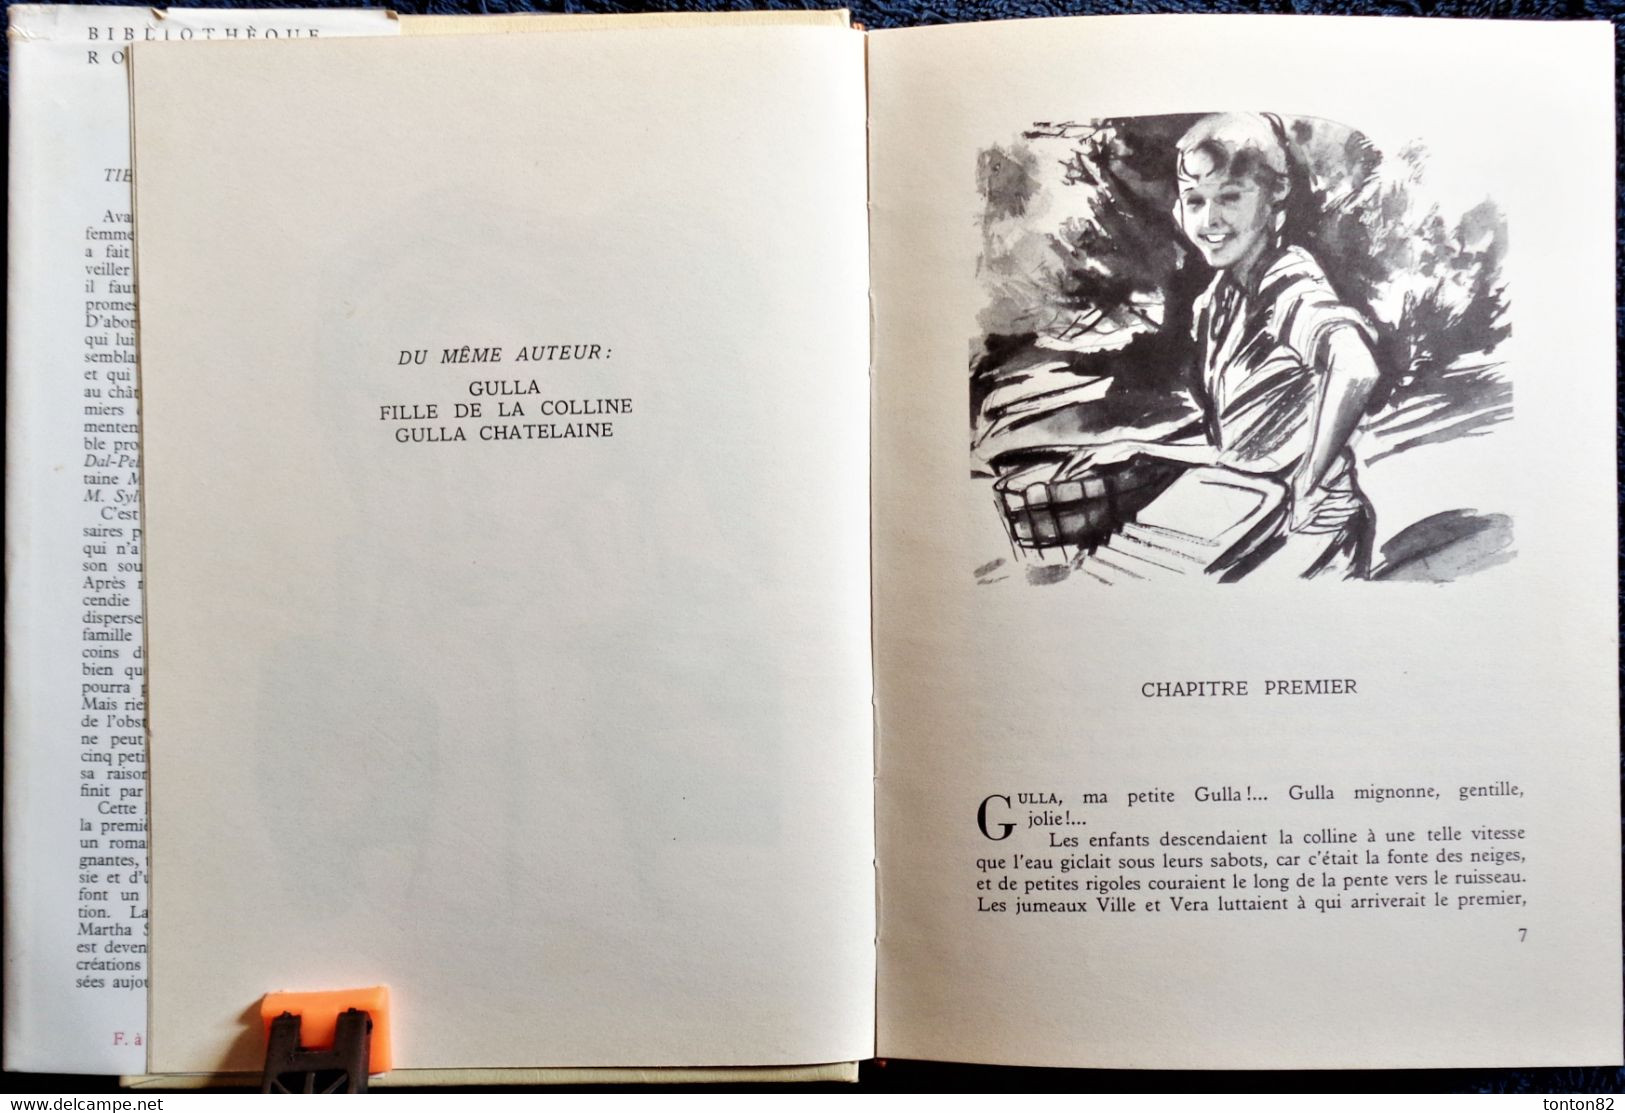 Martha Sandwall-Bergström - Gulla Tient Sa Promesse -  Bibliothèque Rouge Et Or Souveraine - ( 1955 ) . - Bibliotheque Rouge Et Or